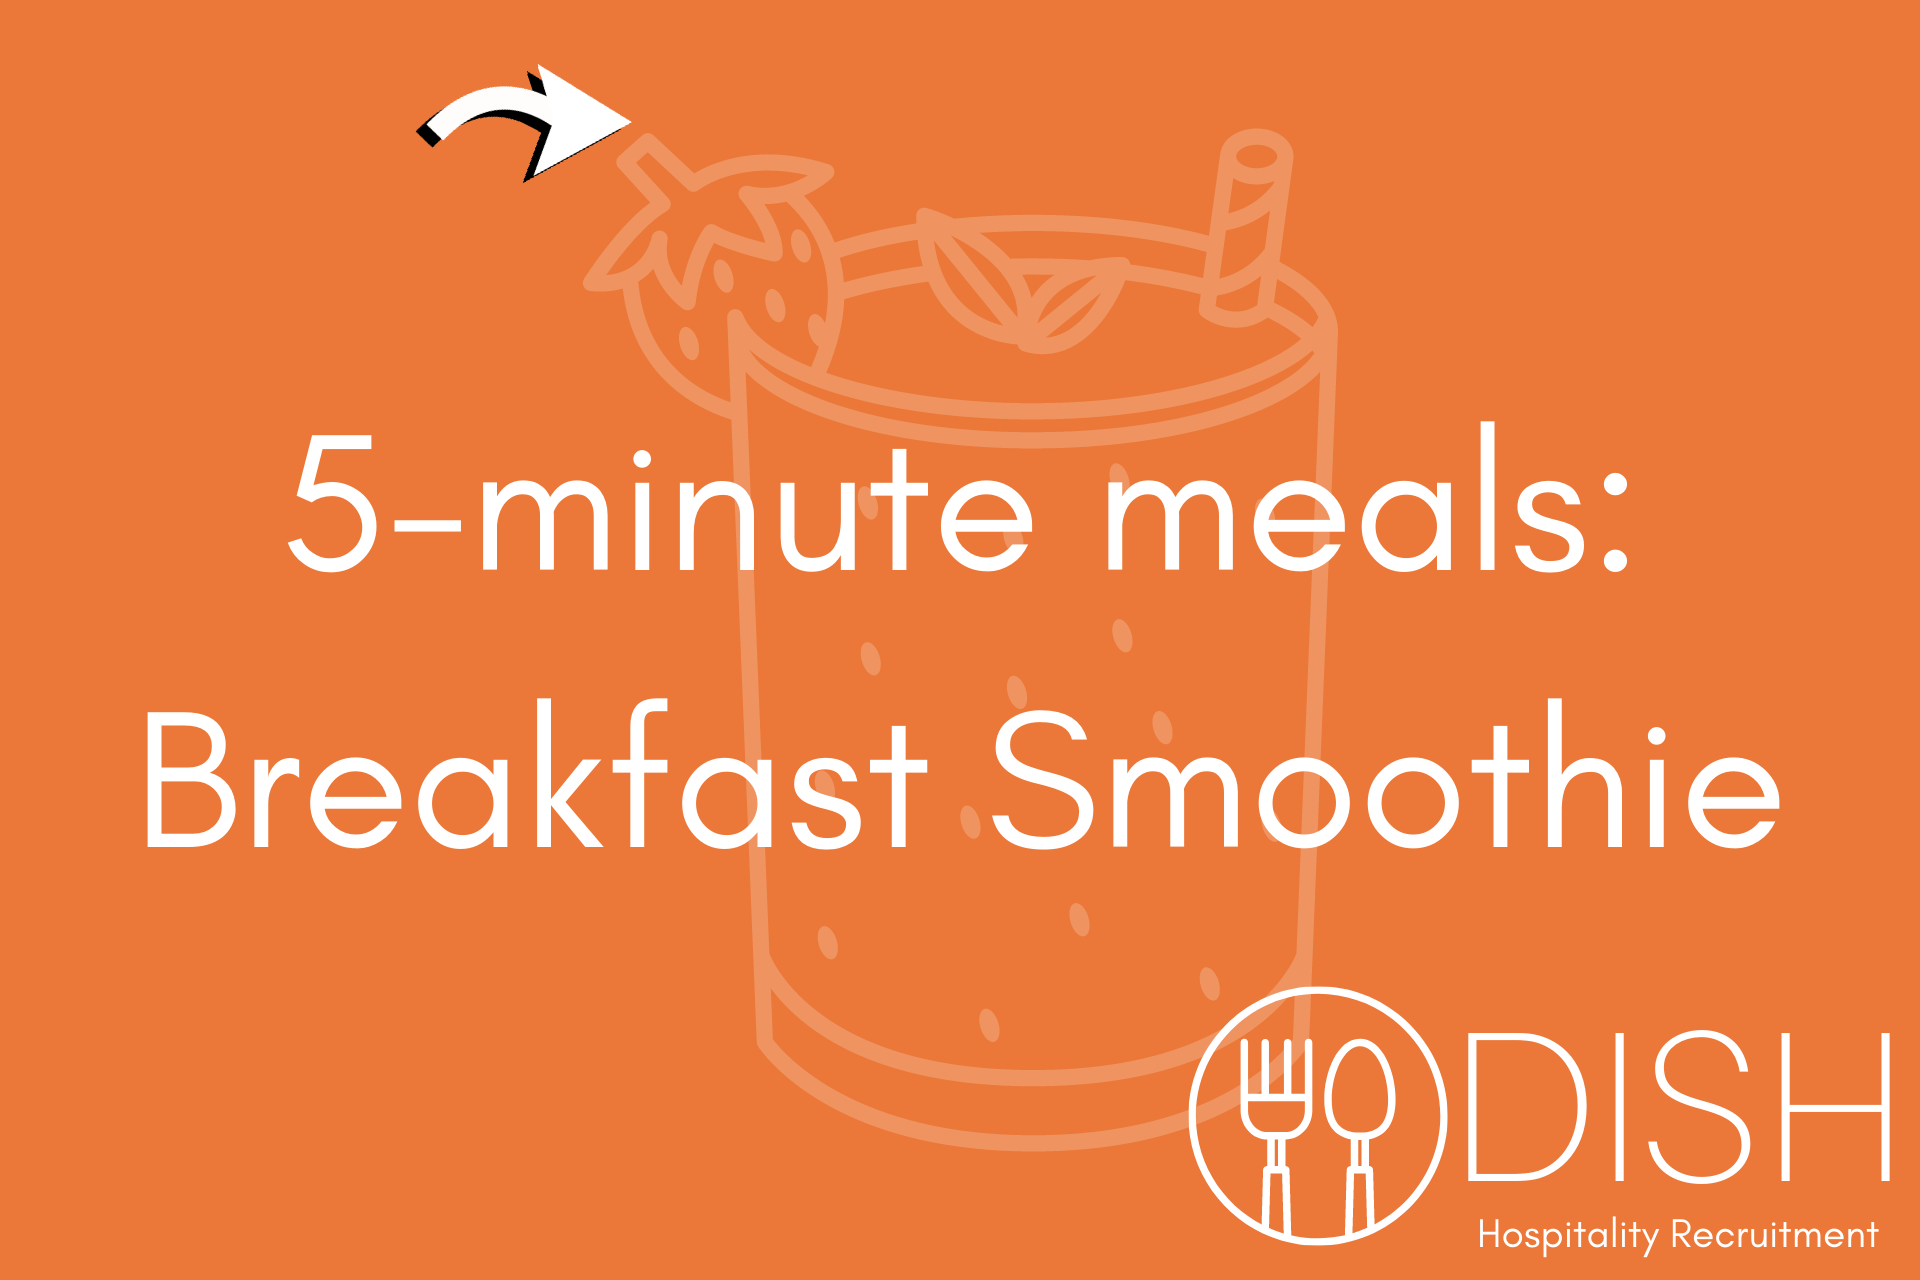 5 Minute Meal of the Week: Breakfast Smoothie